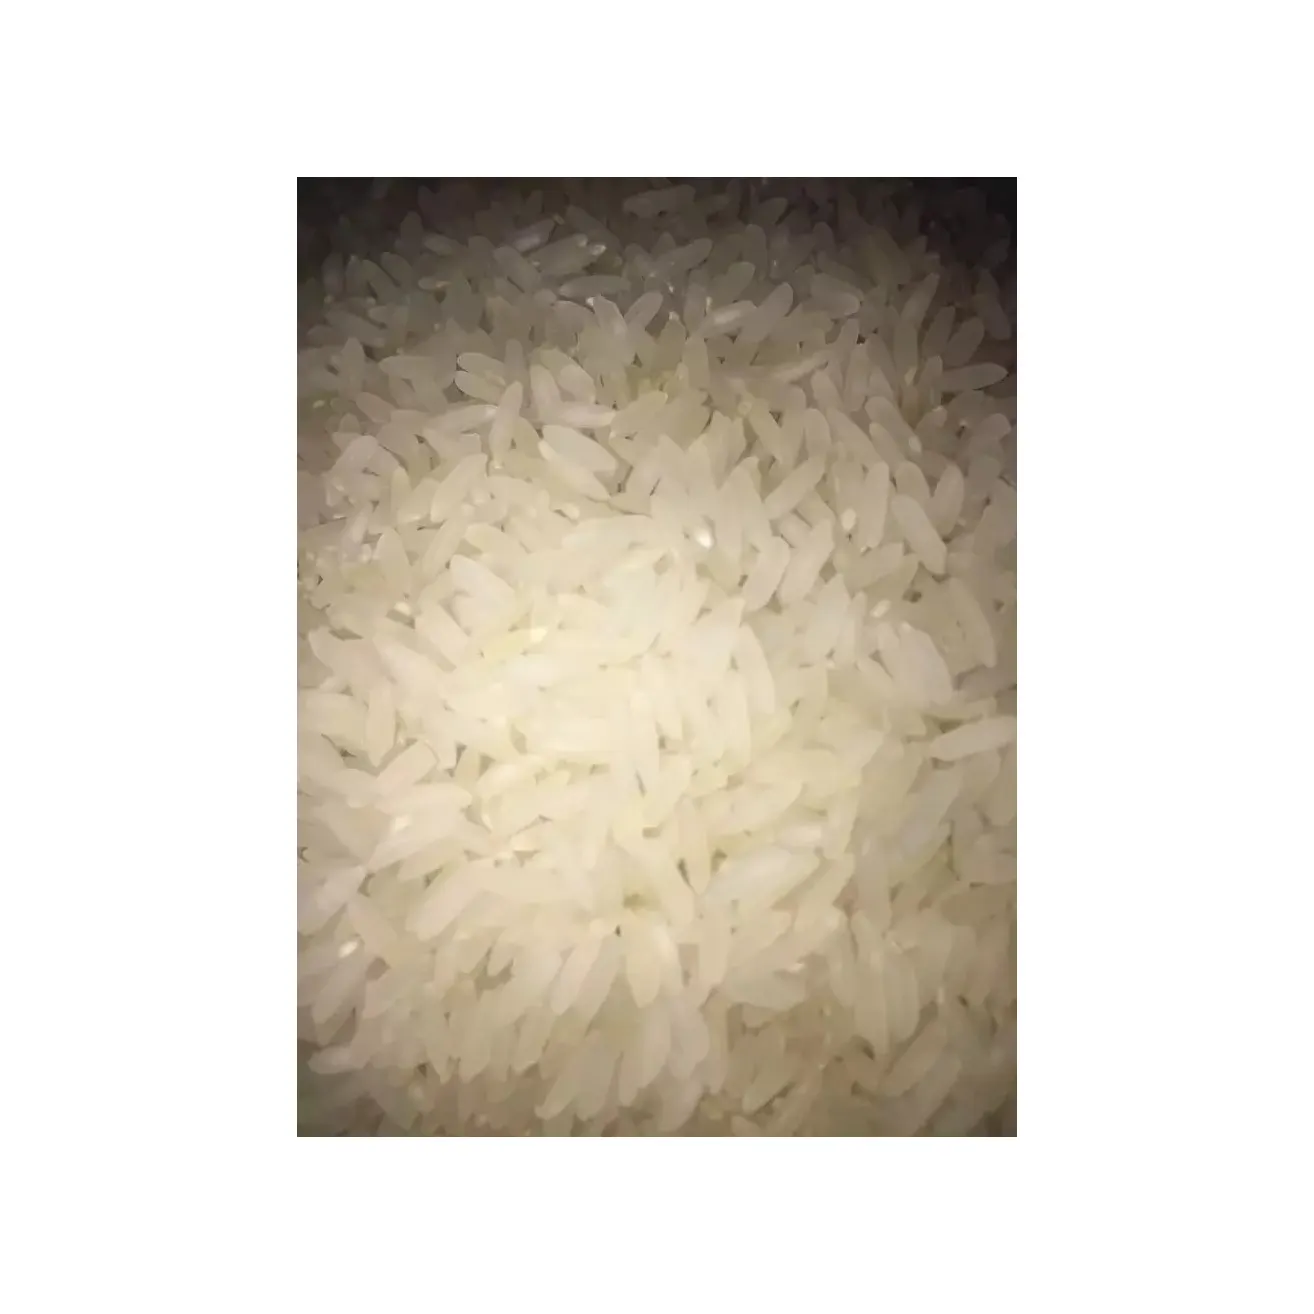 बिक्री के लिए उच्च गुणवत्ता वाला जैस्मीन लंबे दाने वाला सफेद चावल सफेद चावल 5% टूटा हुआ - निर्यात गुणवत्ता वाला लंबा दाना चावल नरम और परफ्यूम वाला अनाज